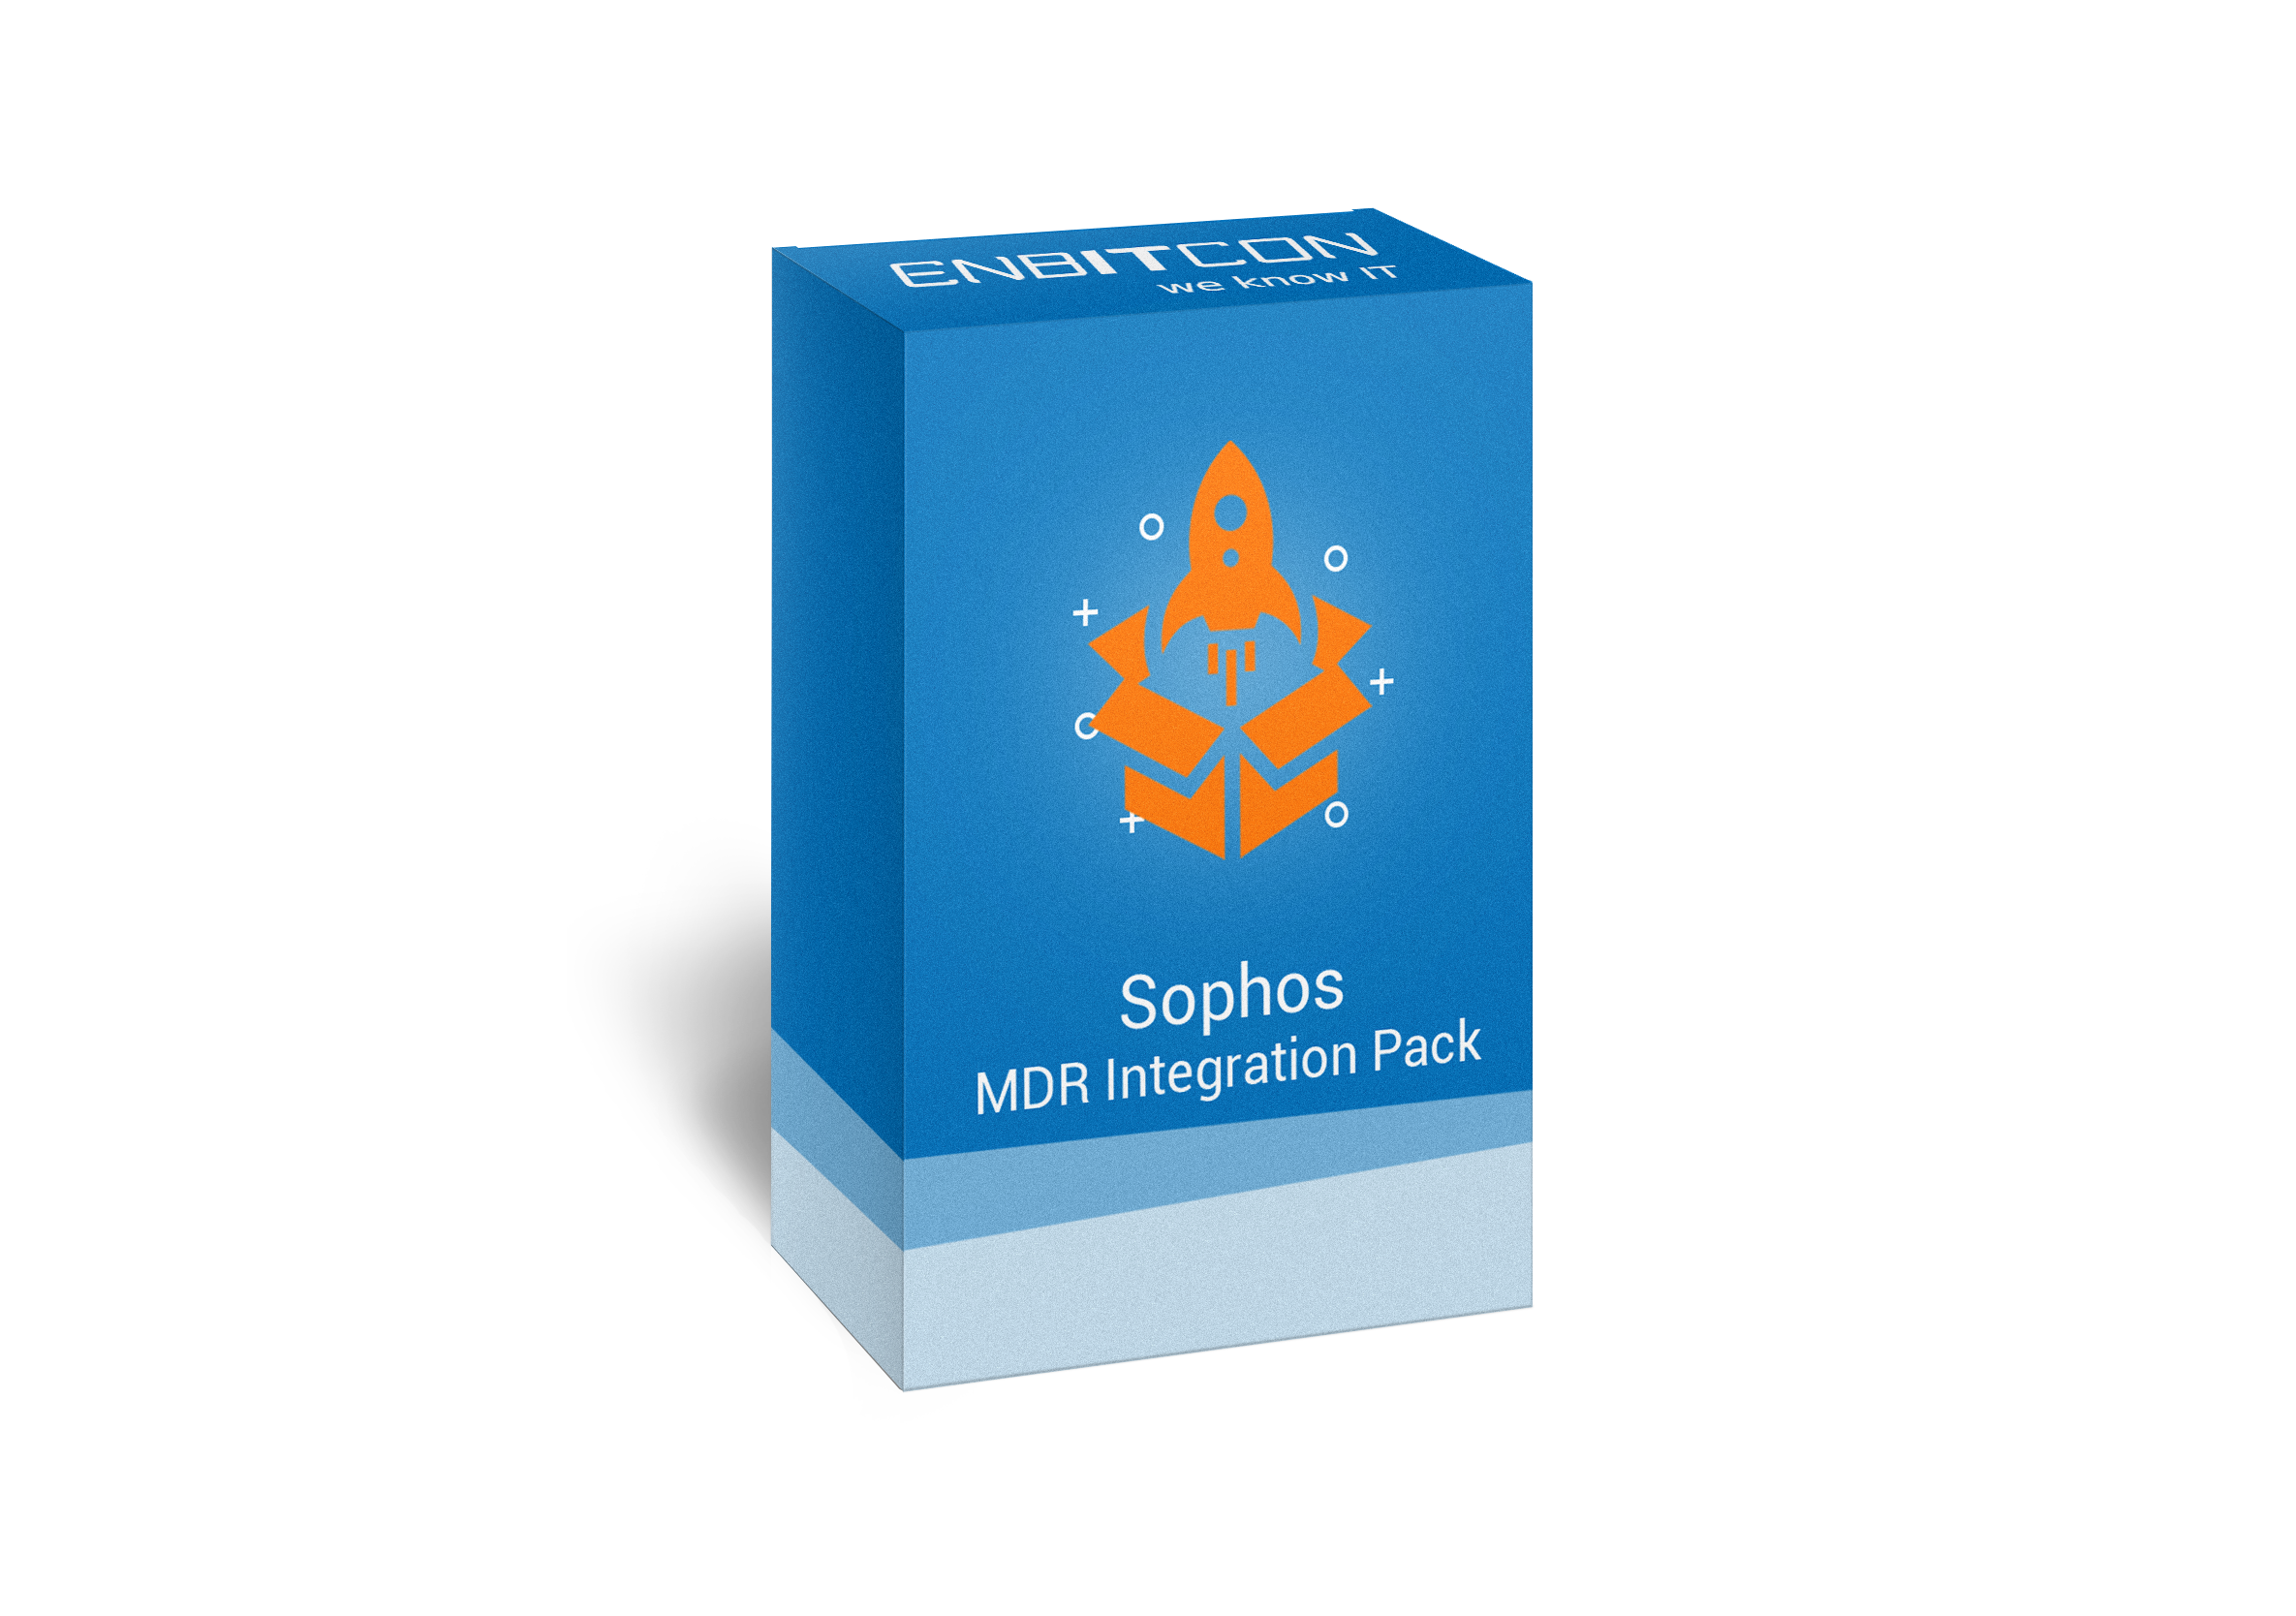 Sophos MDR Integration Pack Box Vorschaubild bestehend aus einer orangenen Rakete auf einer blauen Box